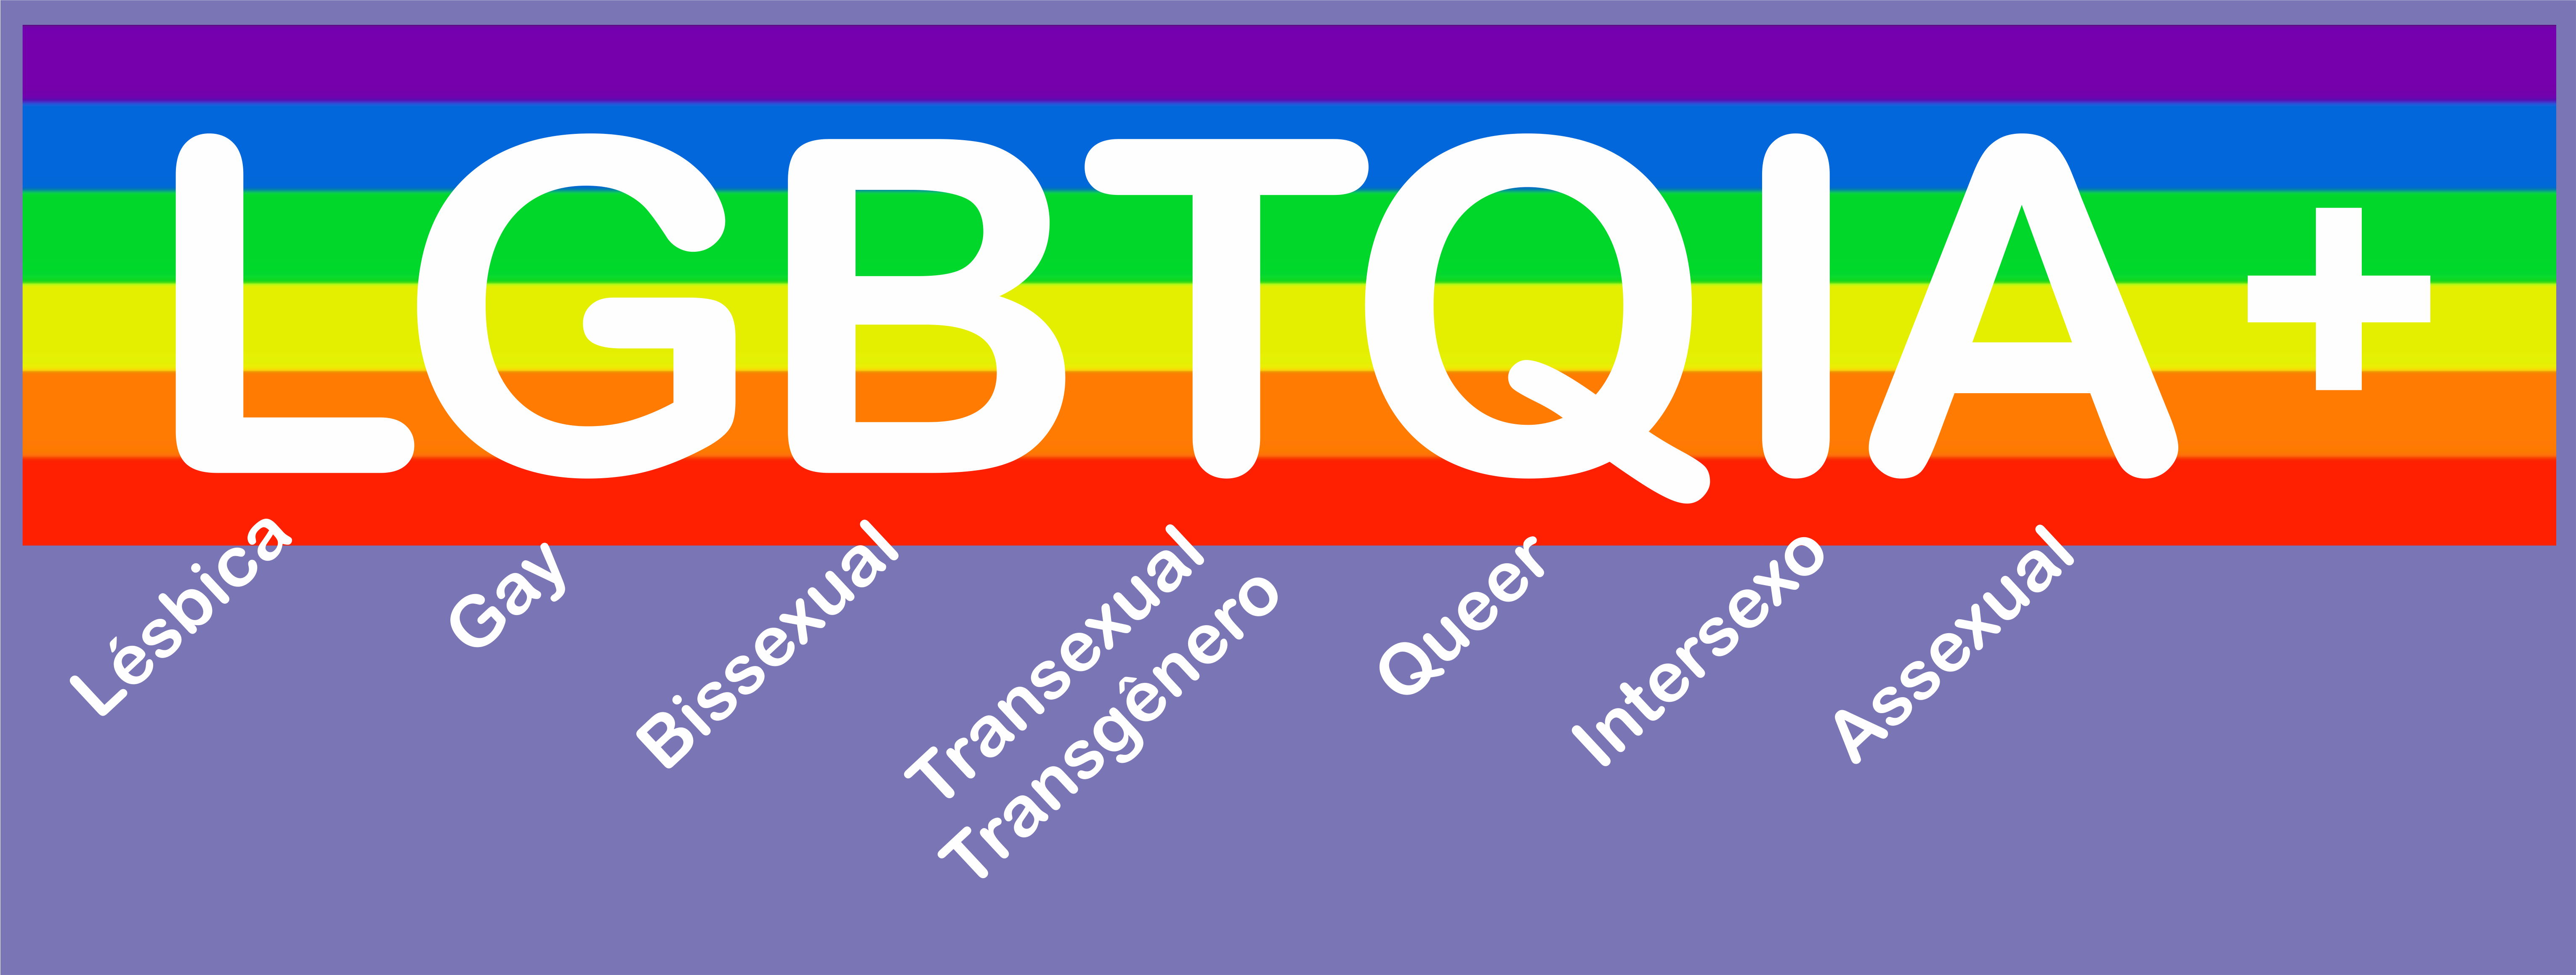 Em um retângulo de fundo lilás, na parte superior, um retângulo com seis listras nas cores de cima para baixo: roxo, azul, verde, amarelo, laranja e vermelho, o nome em branco "LGBTQIA+" Abaixo de cada letra na posição inclinada estão os nomes correspondentes a cada inicial, respectivamente "Lésbica, Gay, Bissexual, Transexual/Transgênero, Queer, Intersexo e Assexual".